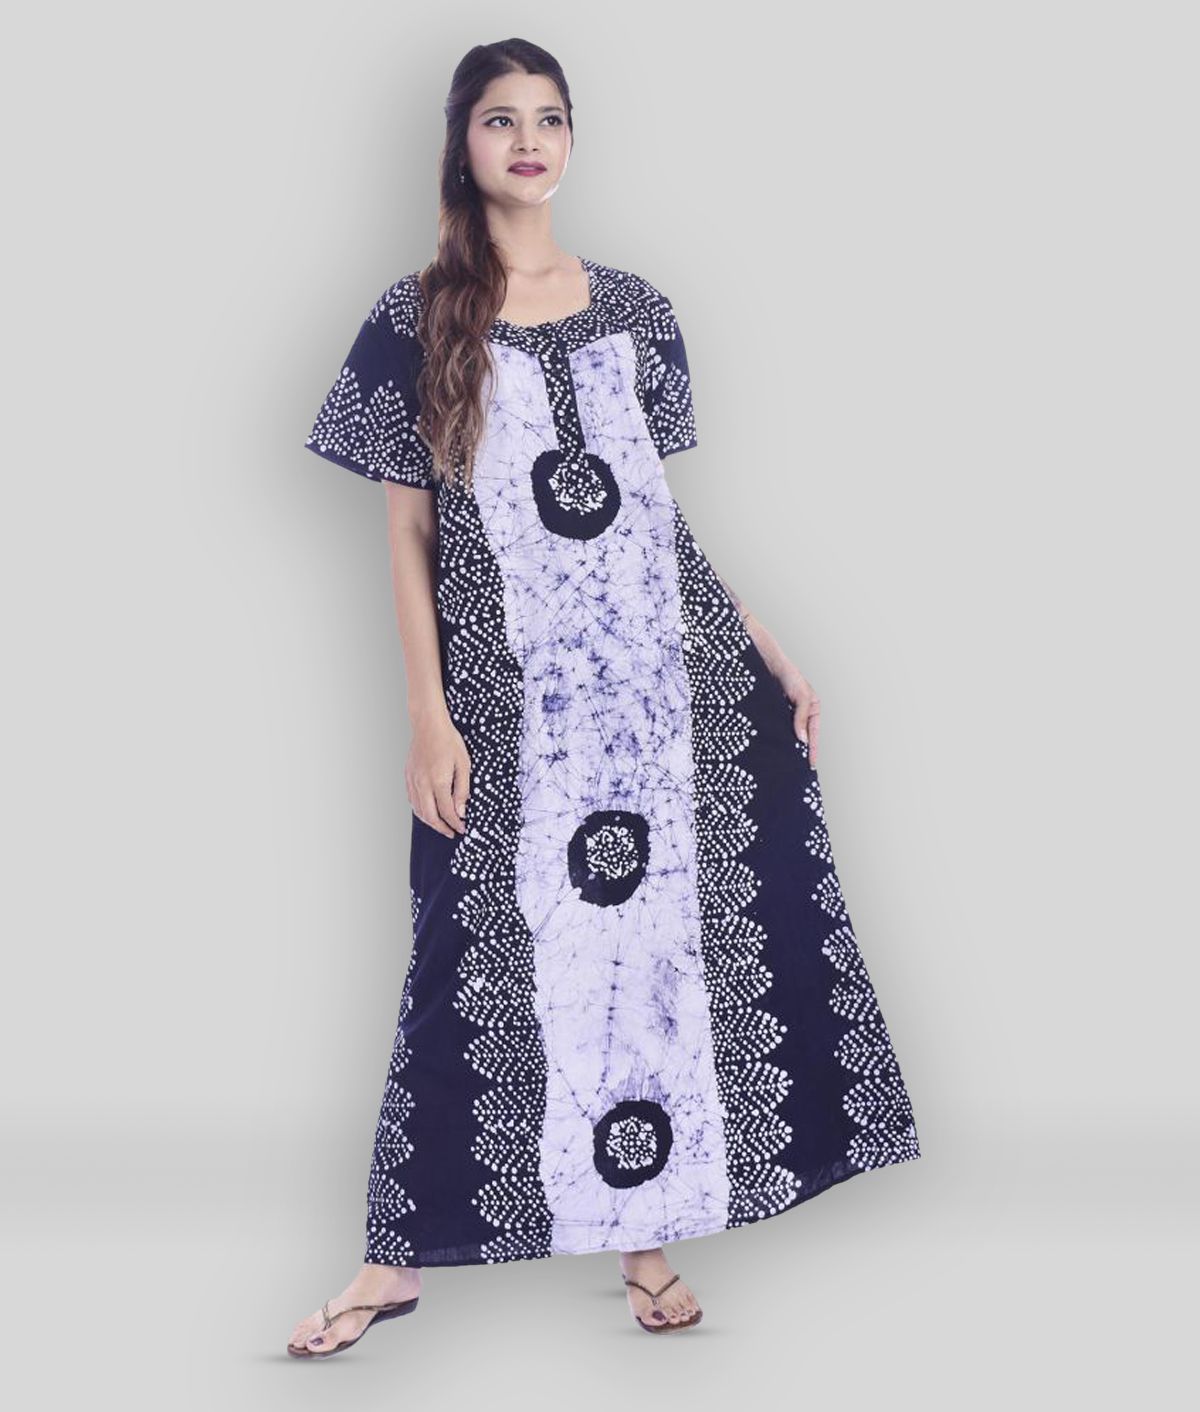     			Raj - Multicolor Cotton Women's Nightwear Nighty & Night Gowns ( Pack of 1 )